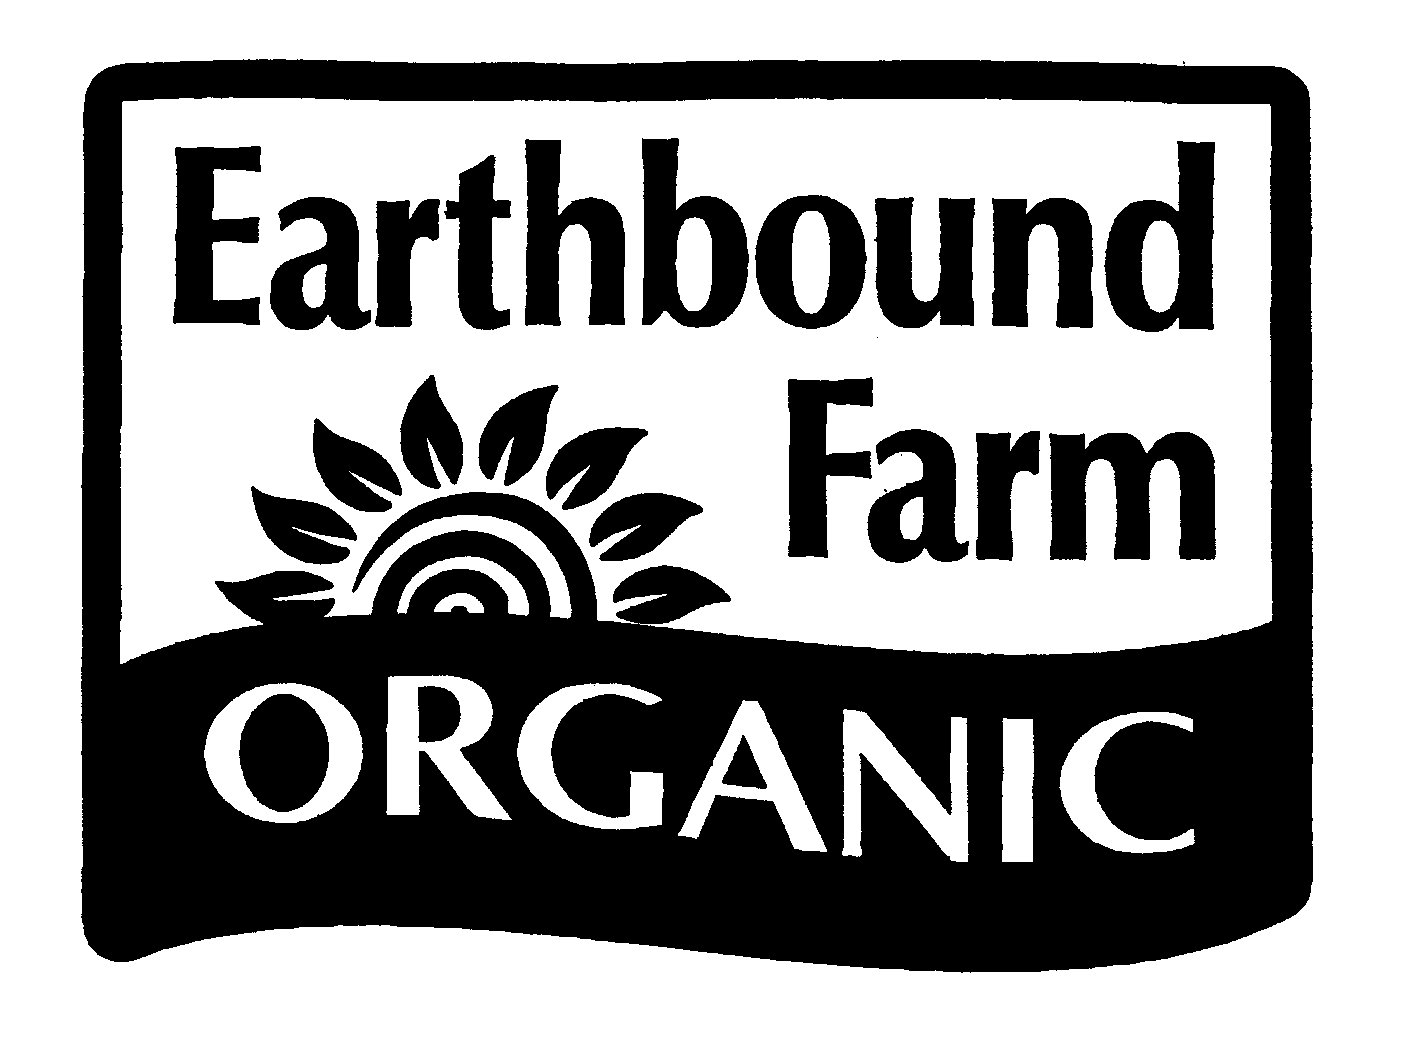 EARTHBOUND FARM ORGANIC